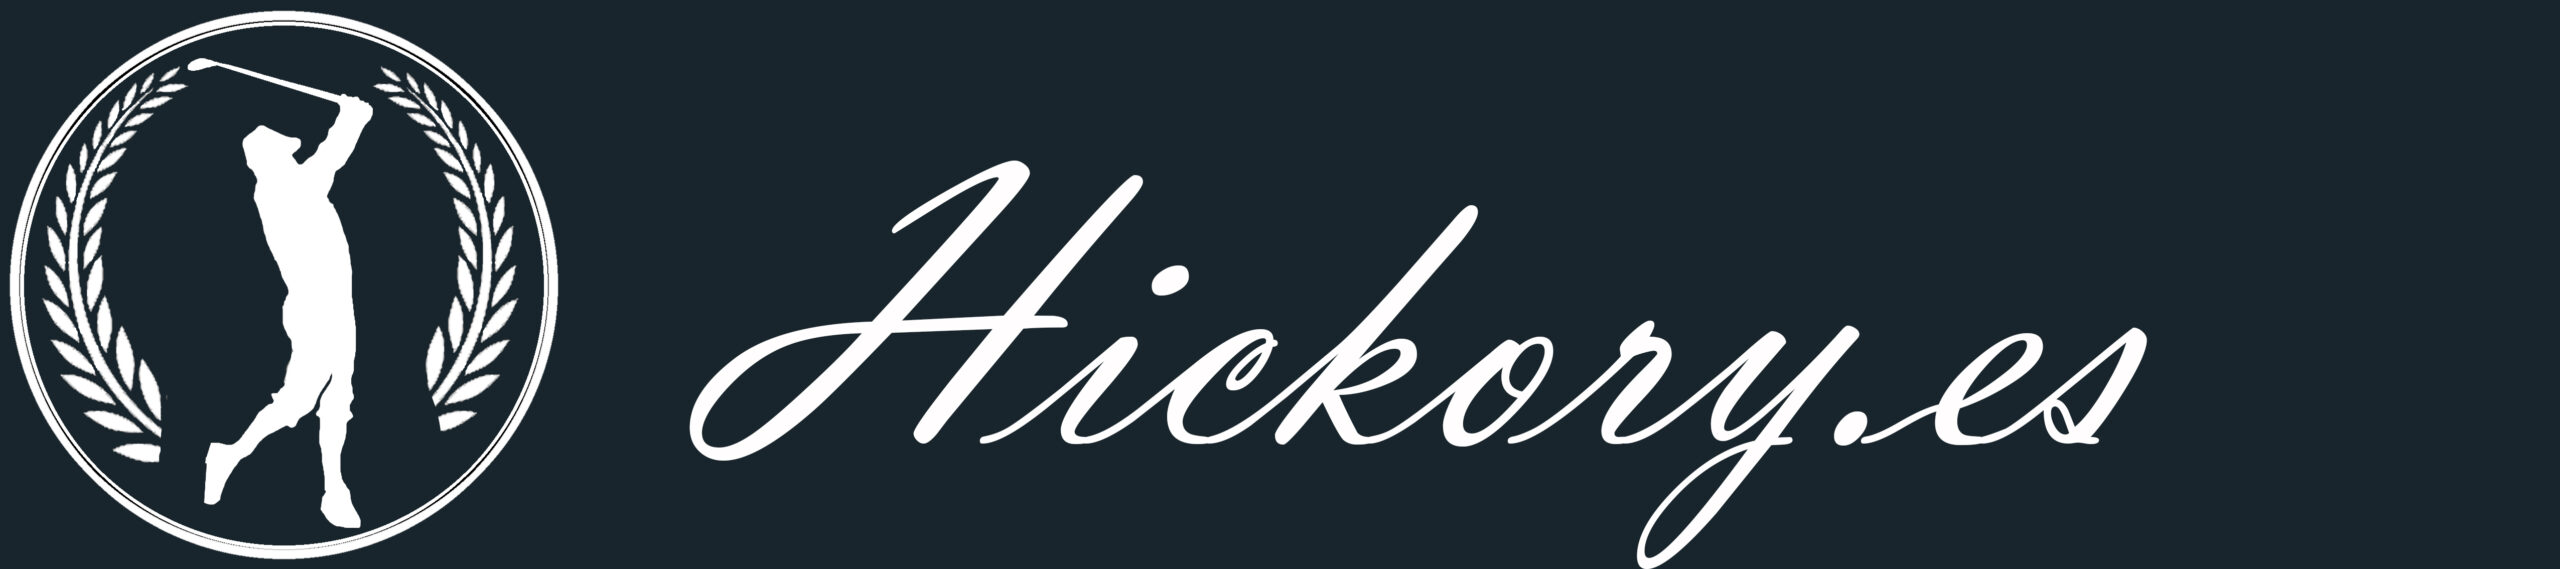 Asociación Española de Hickory